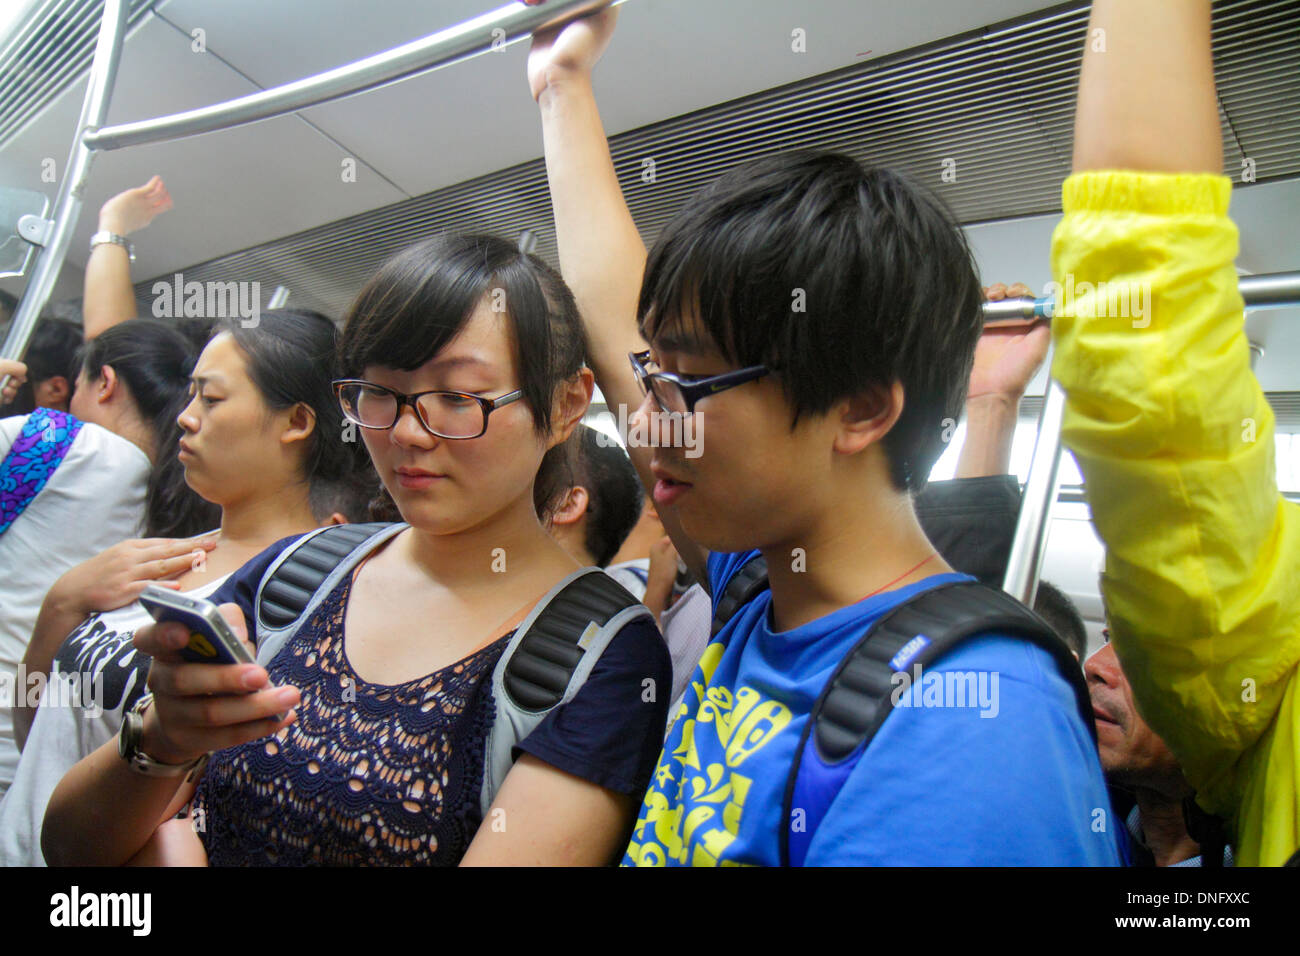 Peking China, Chinesisch, Dongsi U-Bahn-Station, Linie 5 6, Zugkabine, asiatische Frau weibliche Frauen, Mann Männer männlich, Passagiere Passagiere Fahrer, Fahrer, standin Stockfoto